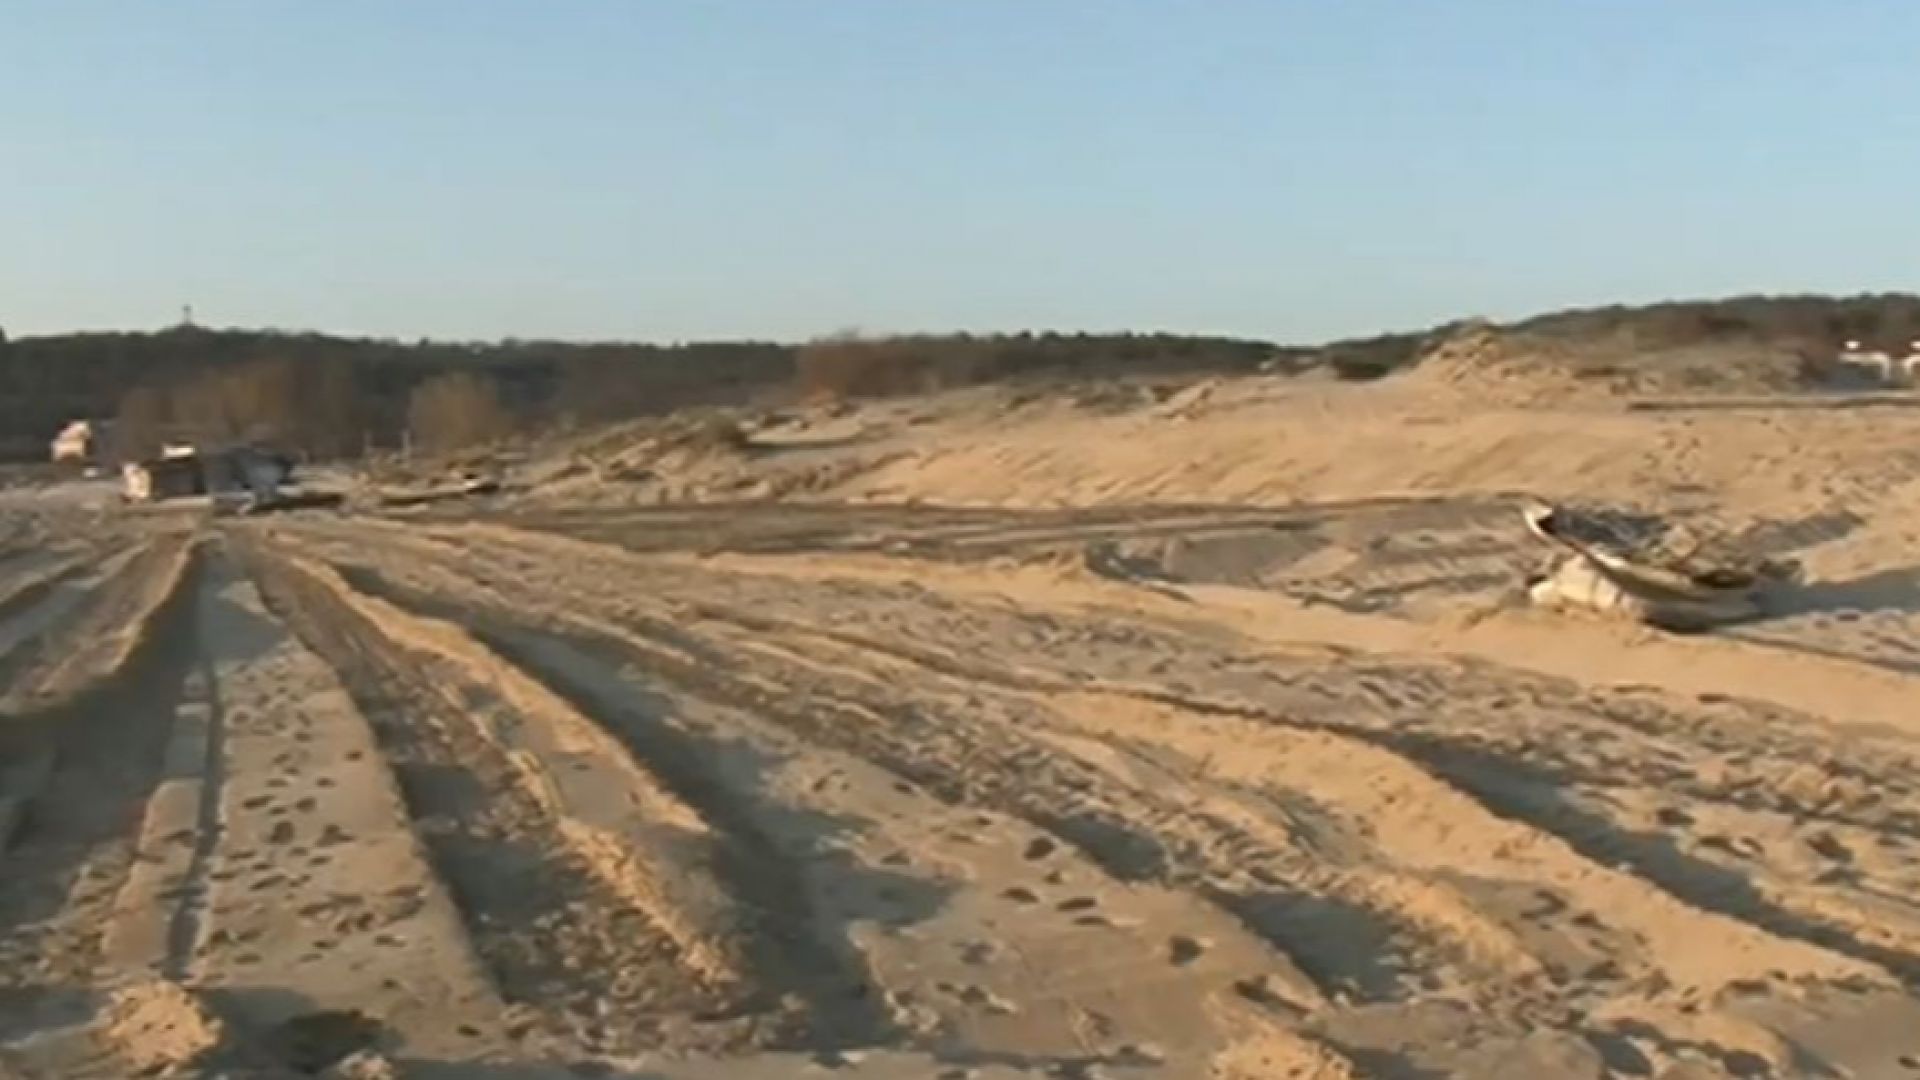 Има ли разрушени дюни край плаж "Смокиня"?